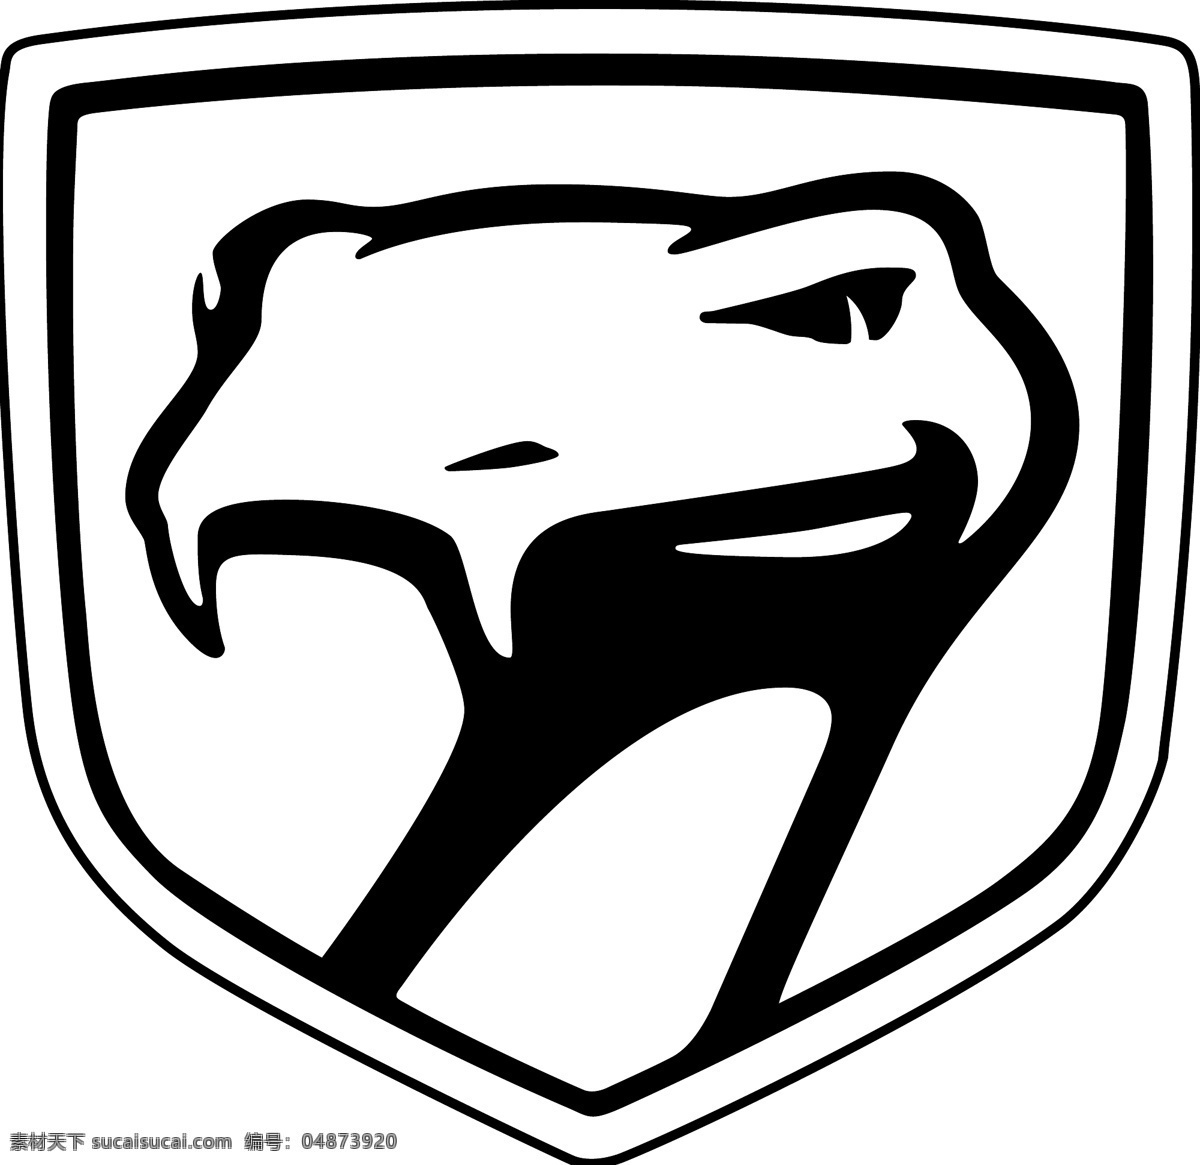 道奇 蝰蛇 标识 公司 免费 品牌 品牌标识 商标 矢量标志下载 免费矢量标识 矢量 psd源文件 logo设计